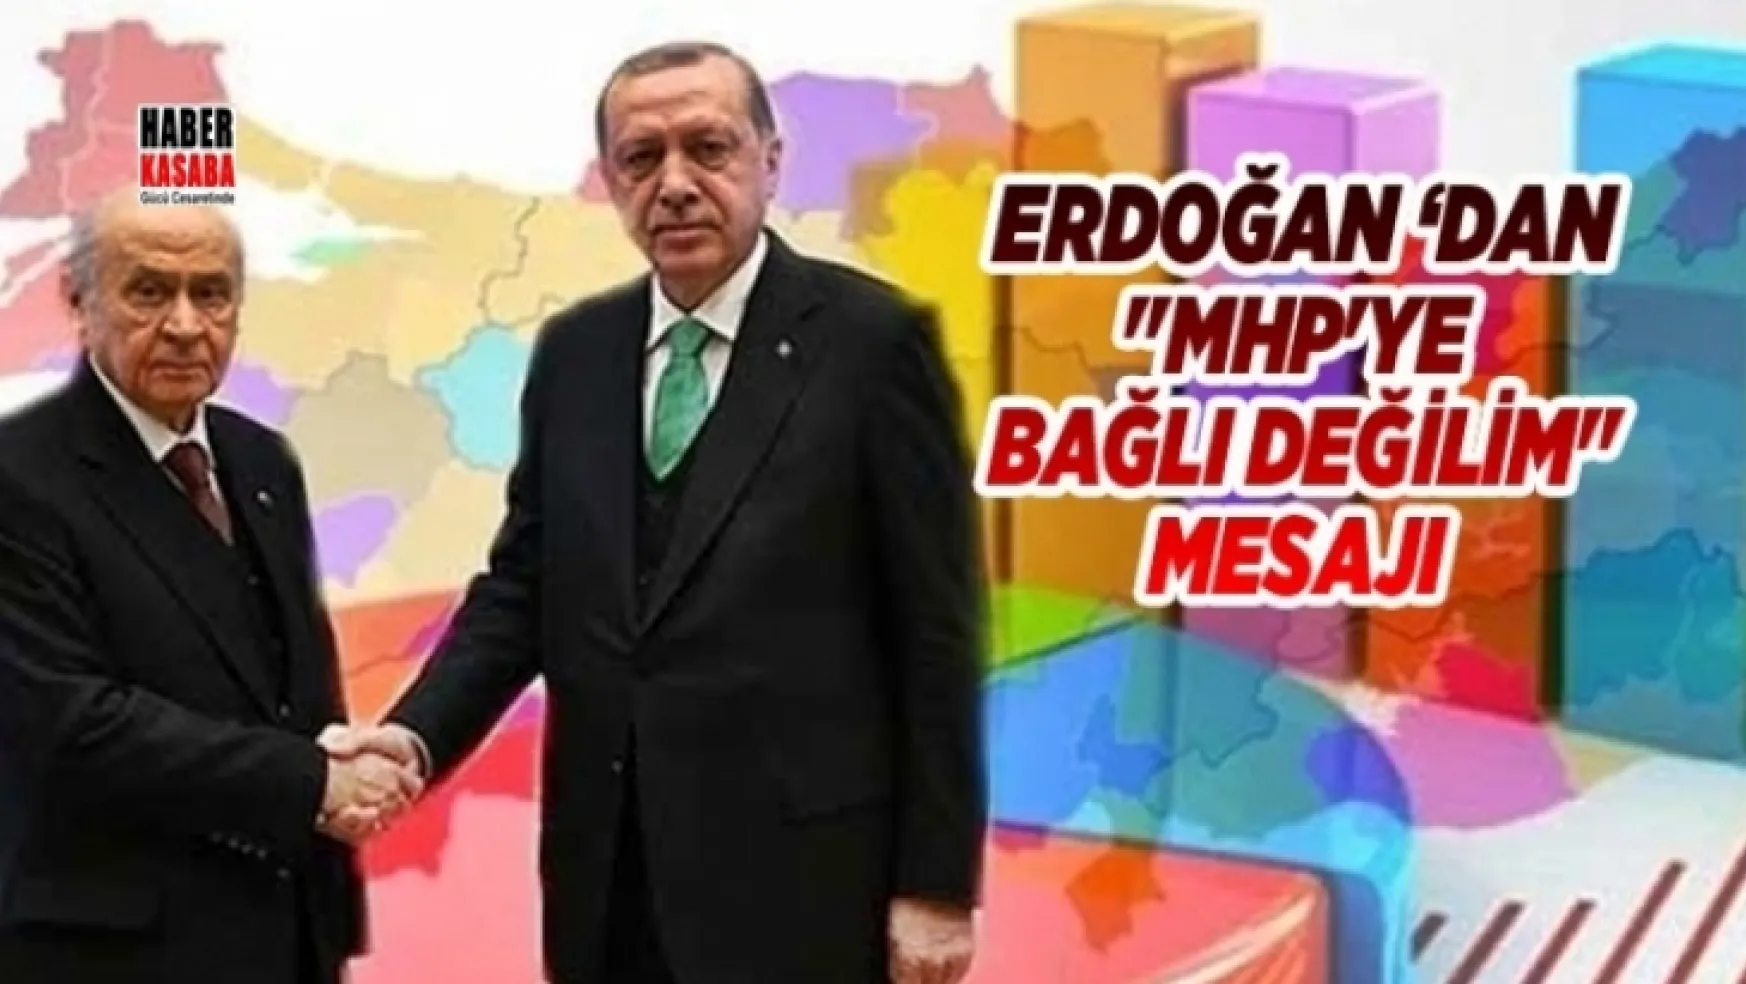 Erdoğan 'dan 'MHP'ye bağlı değilim' mesajı